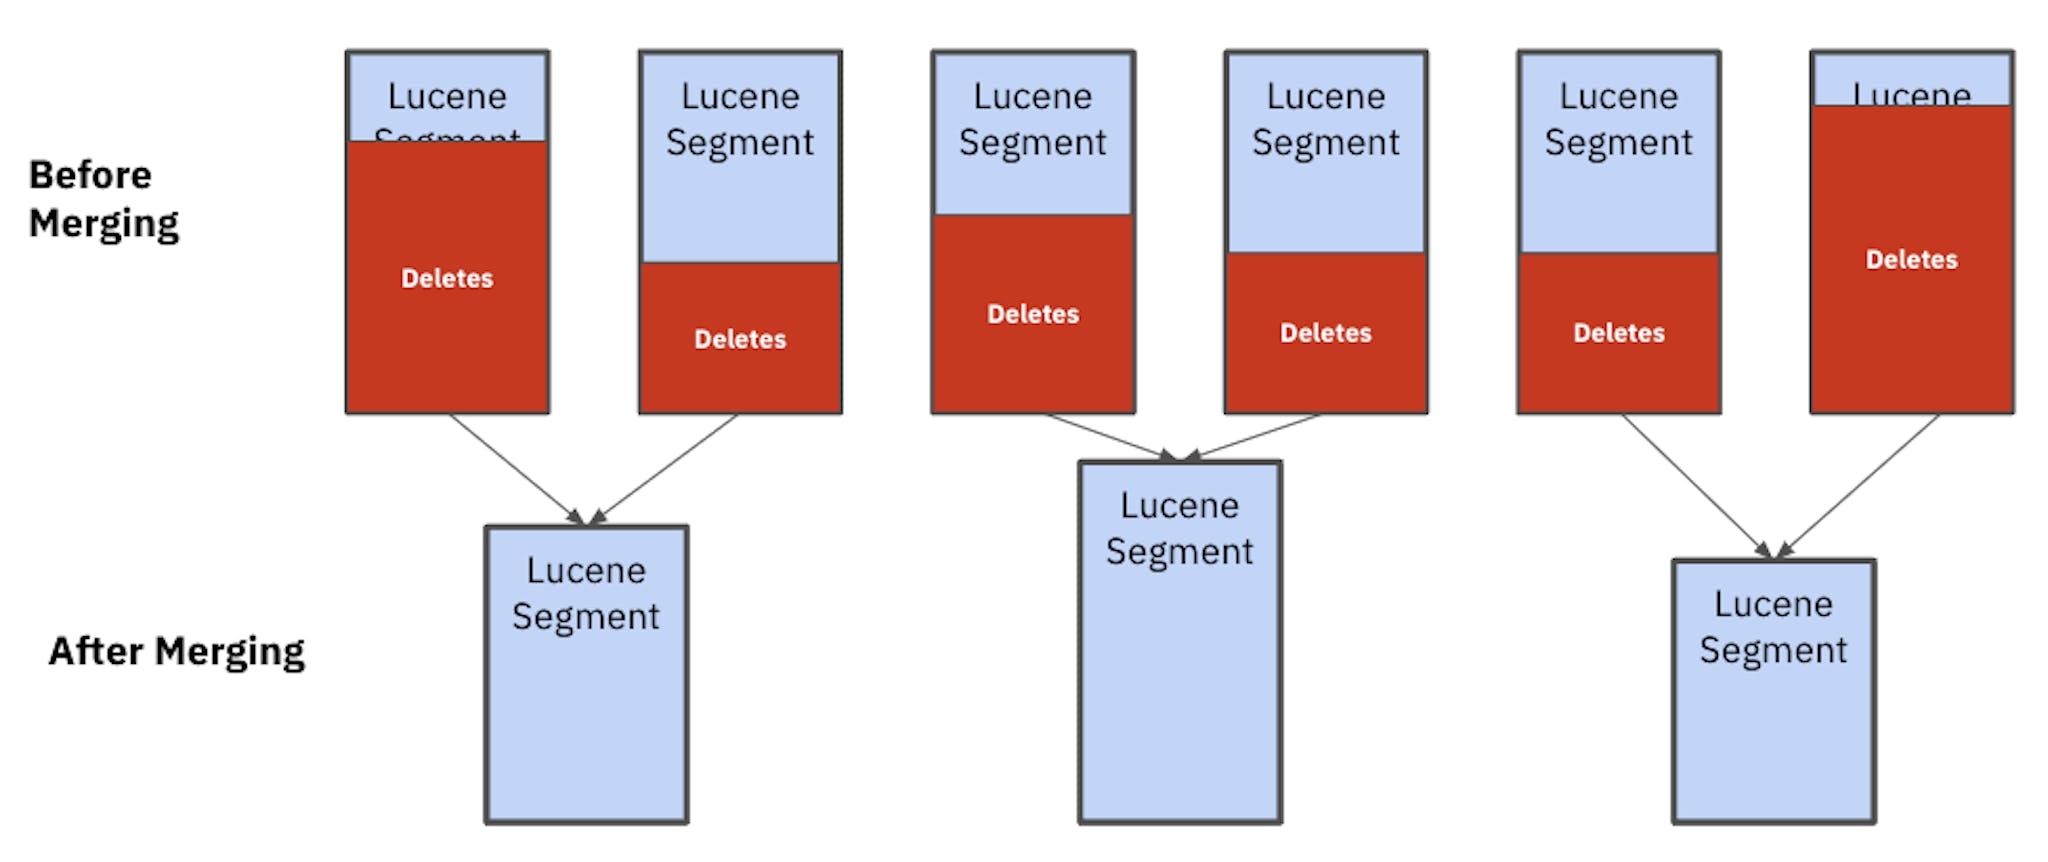 Sau khi hợp nhất, bạn có thể thấy các phân đoạn Lucene đều có kích thước khác nhau. Những phân đoạn không đồng đều này ảnh hưởng đến hiệu suất và độ ổn định